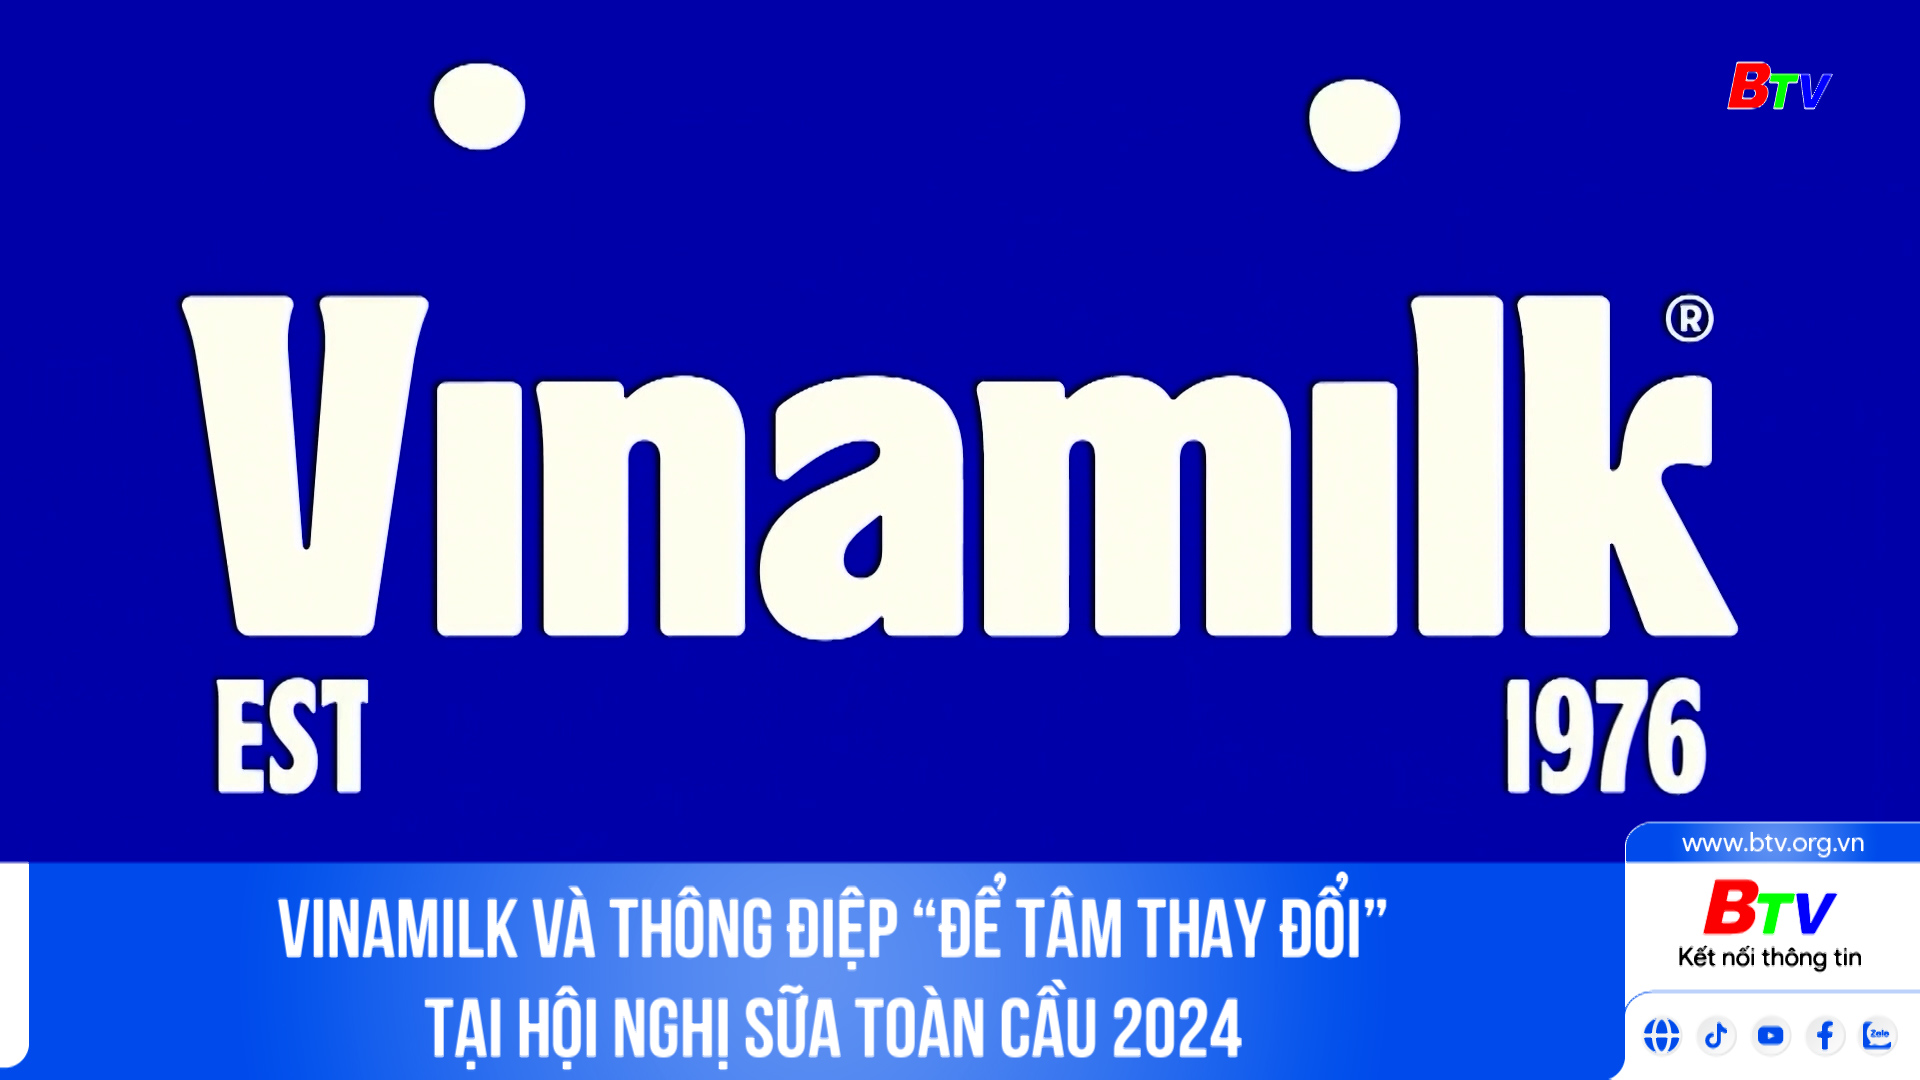 Vinamilk và thông điệp “Để tâm thay đổi” tại hội nghị sữa toàn cầu 2024